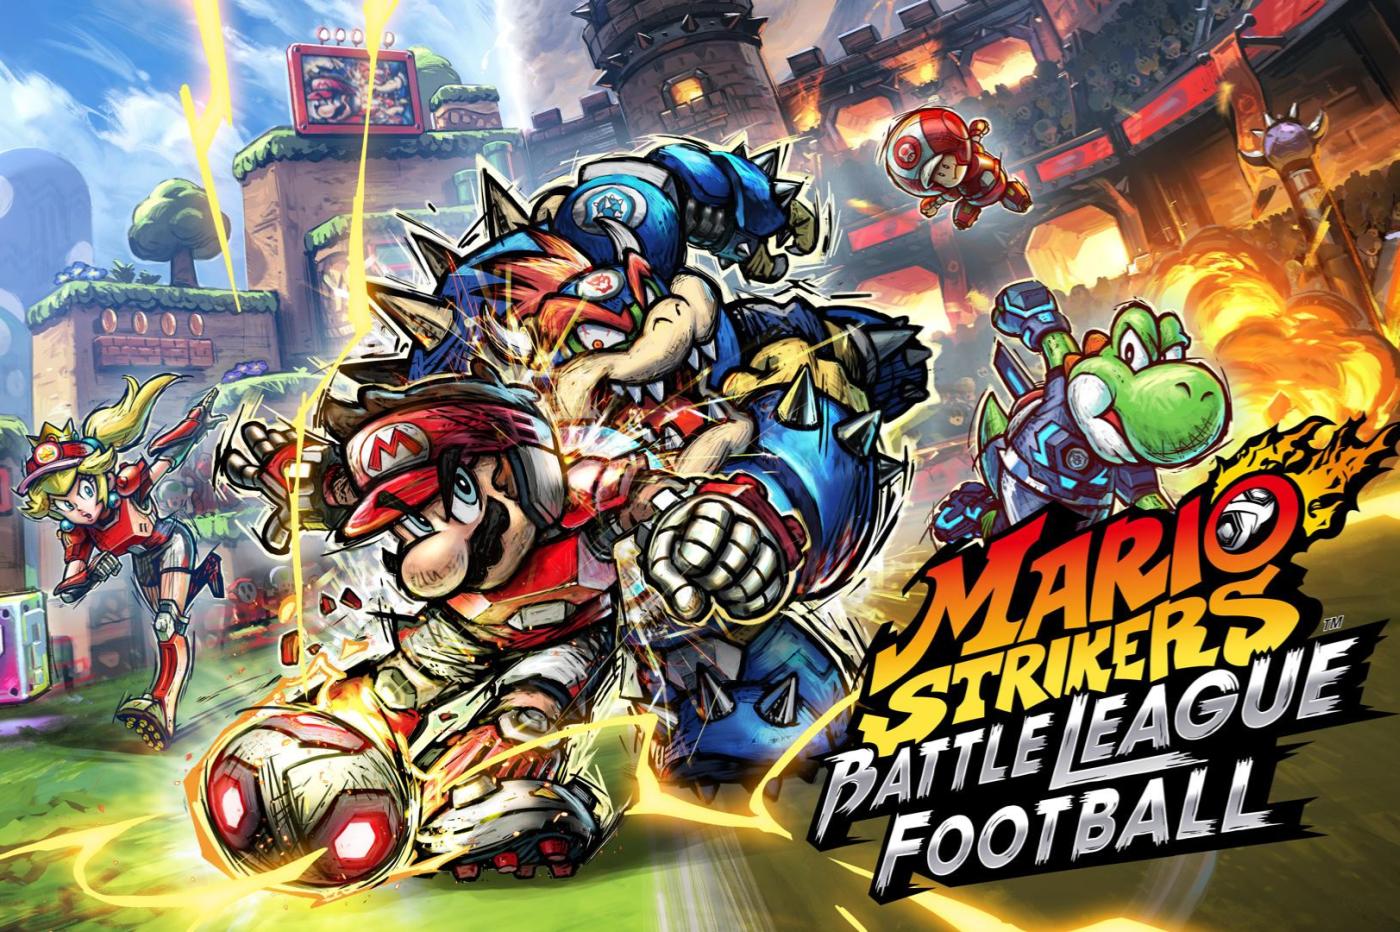 Image promotionnelle de Mario Strikers Battle League Football pour Switch reprenant l'image de la jaquette avec mario et bowser s'affrontant avec yoshi et peach en arrière plan